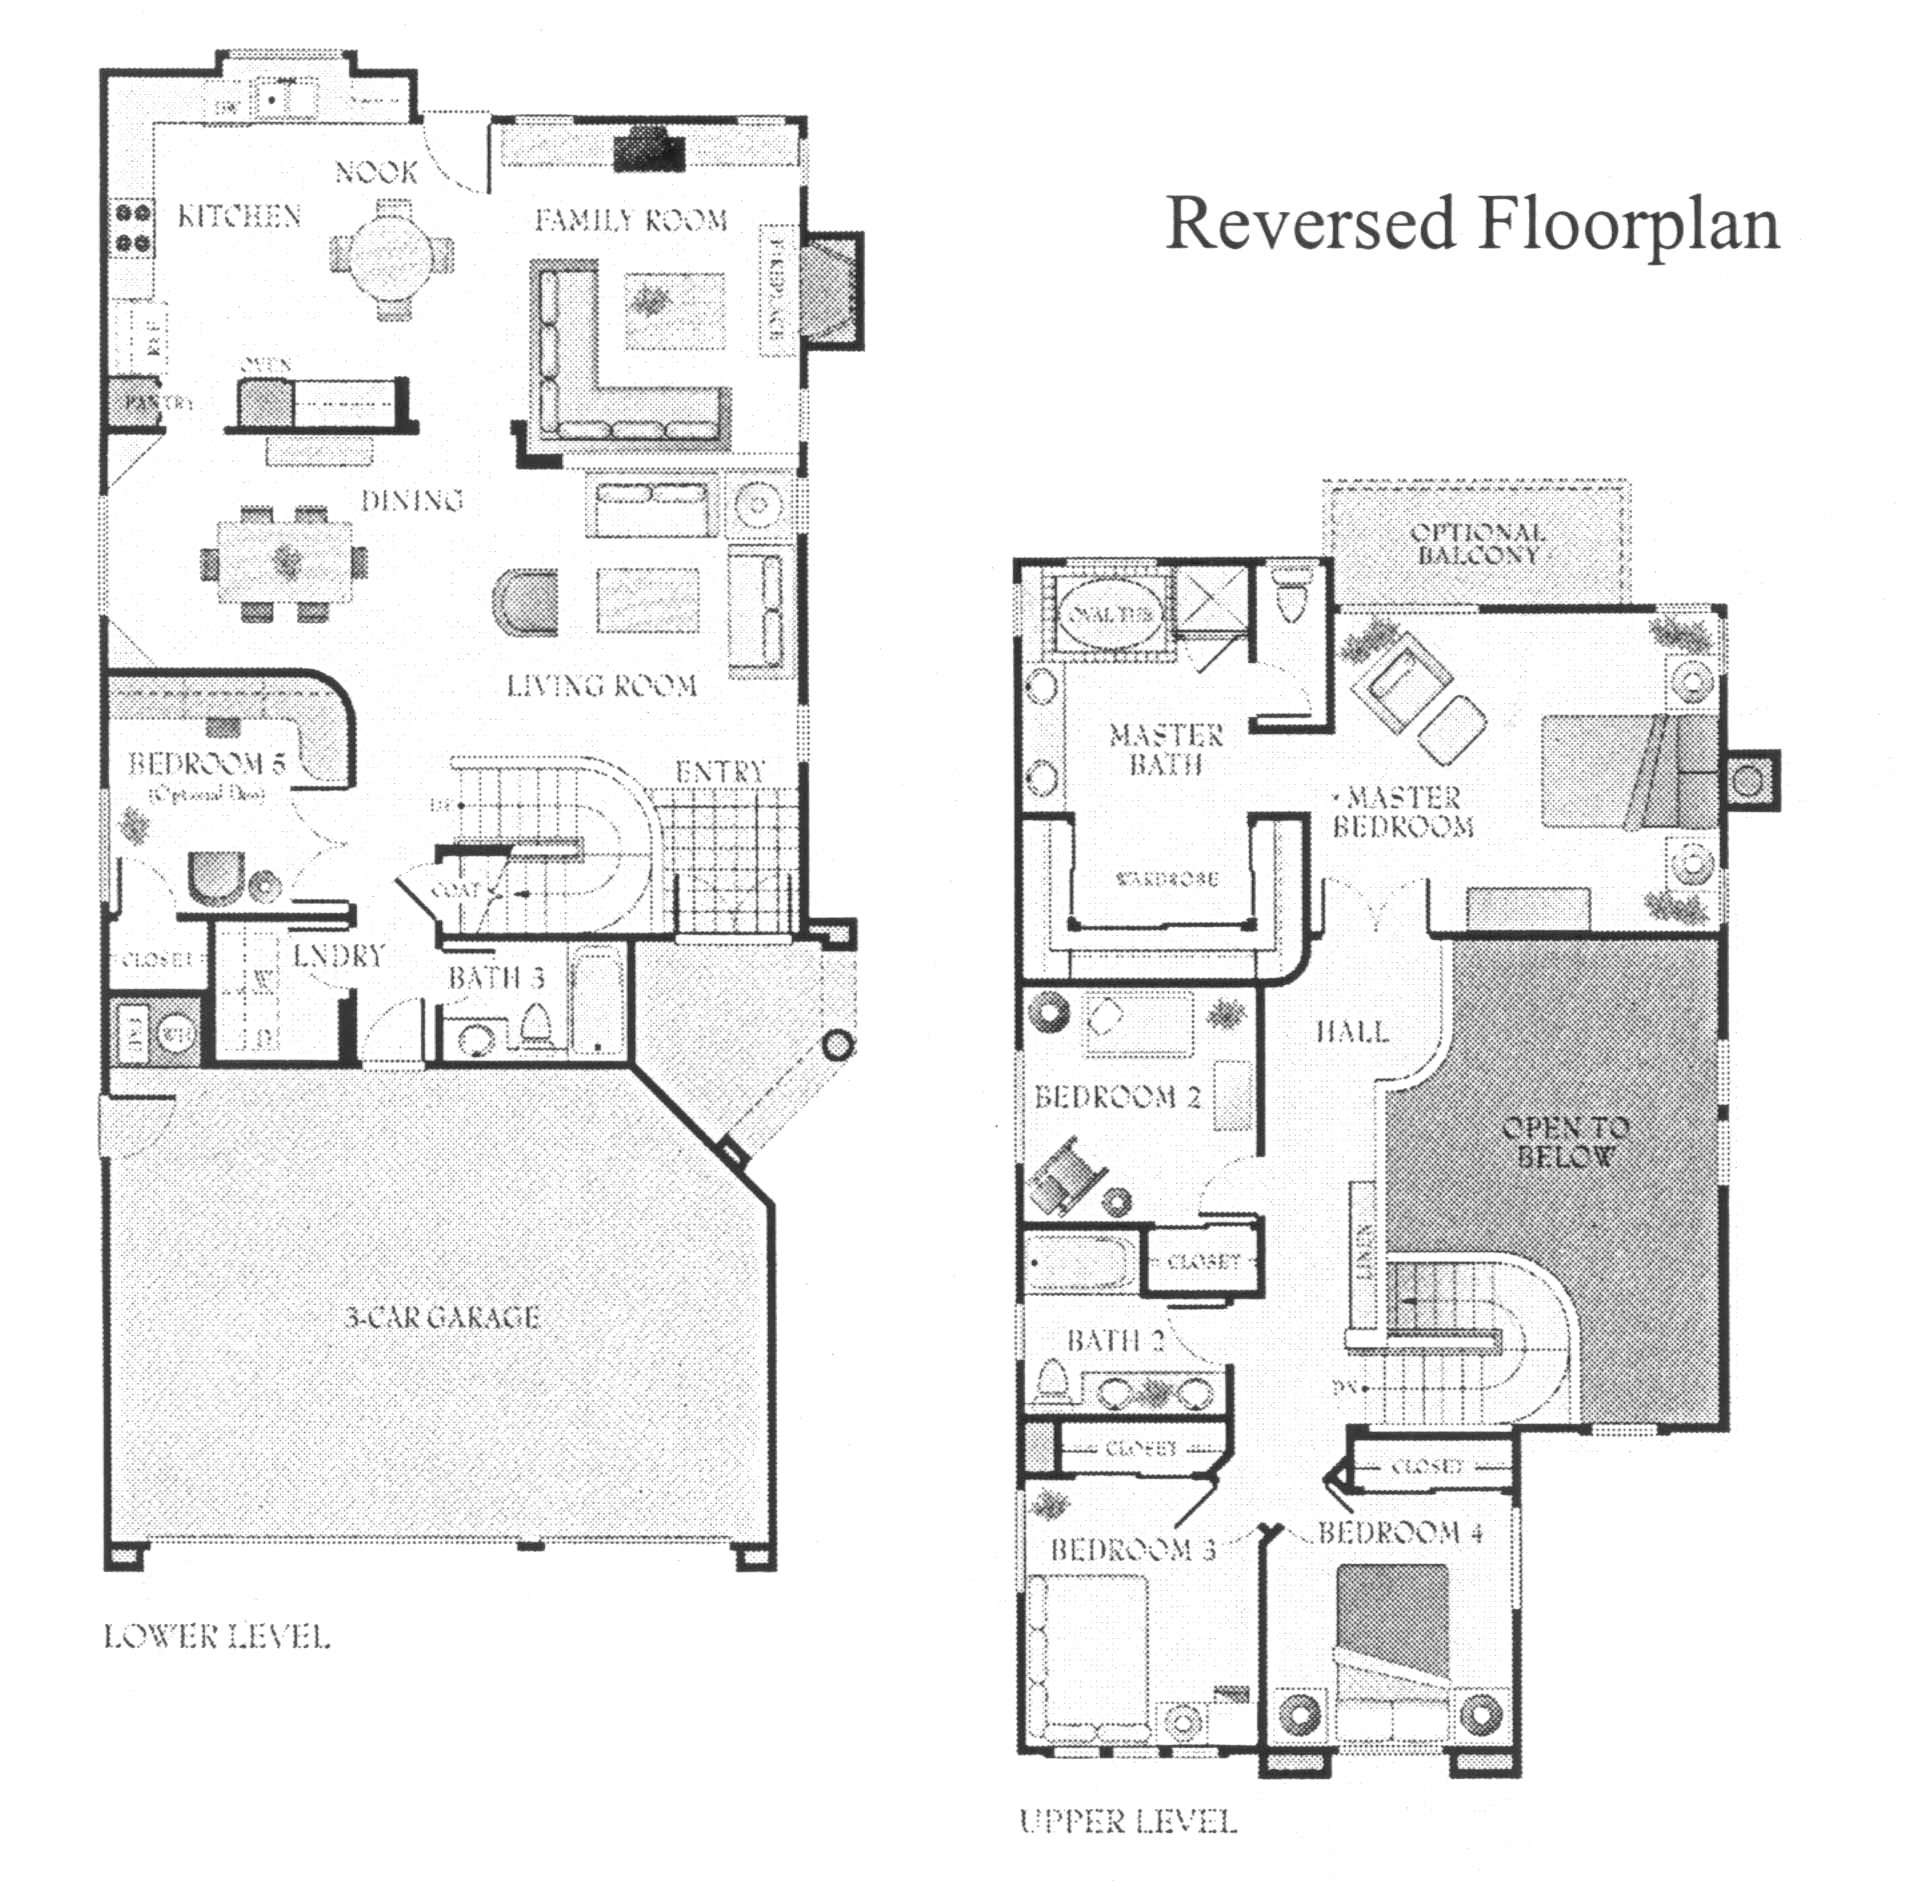 hgtv floor plans inspirational hgtv floor plans discover the floor plan for hgtv dream home 2017